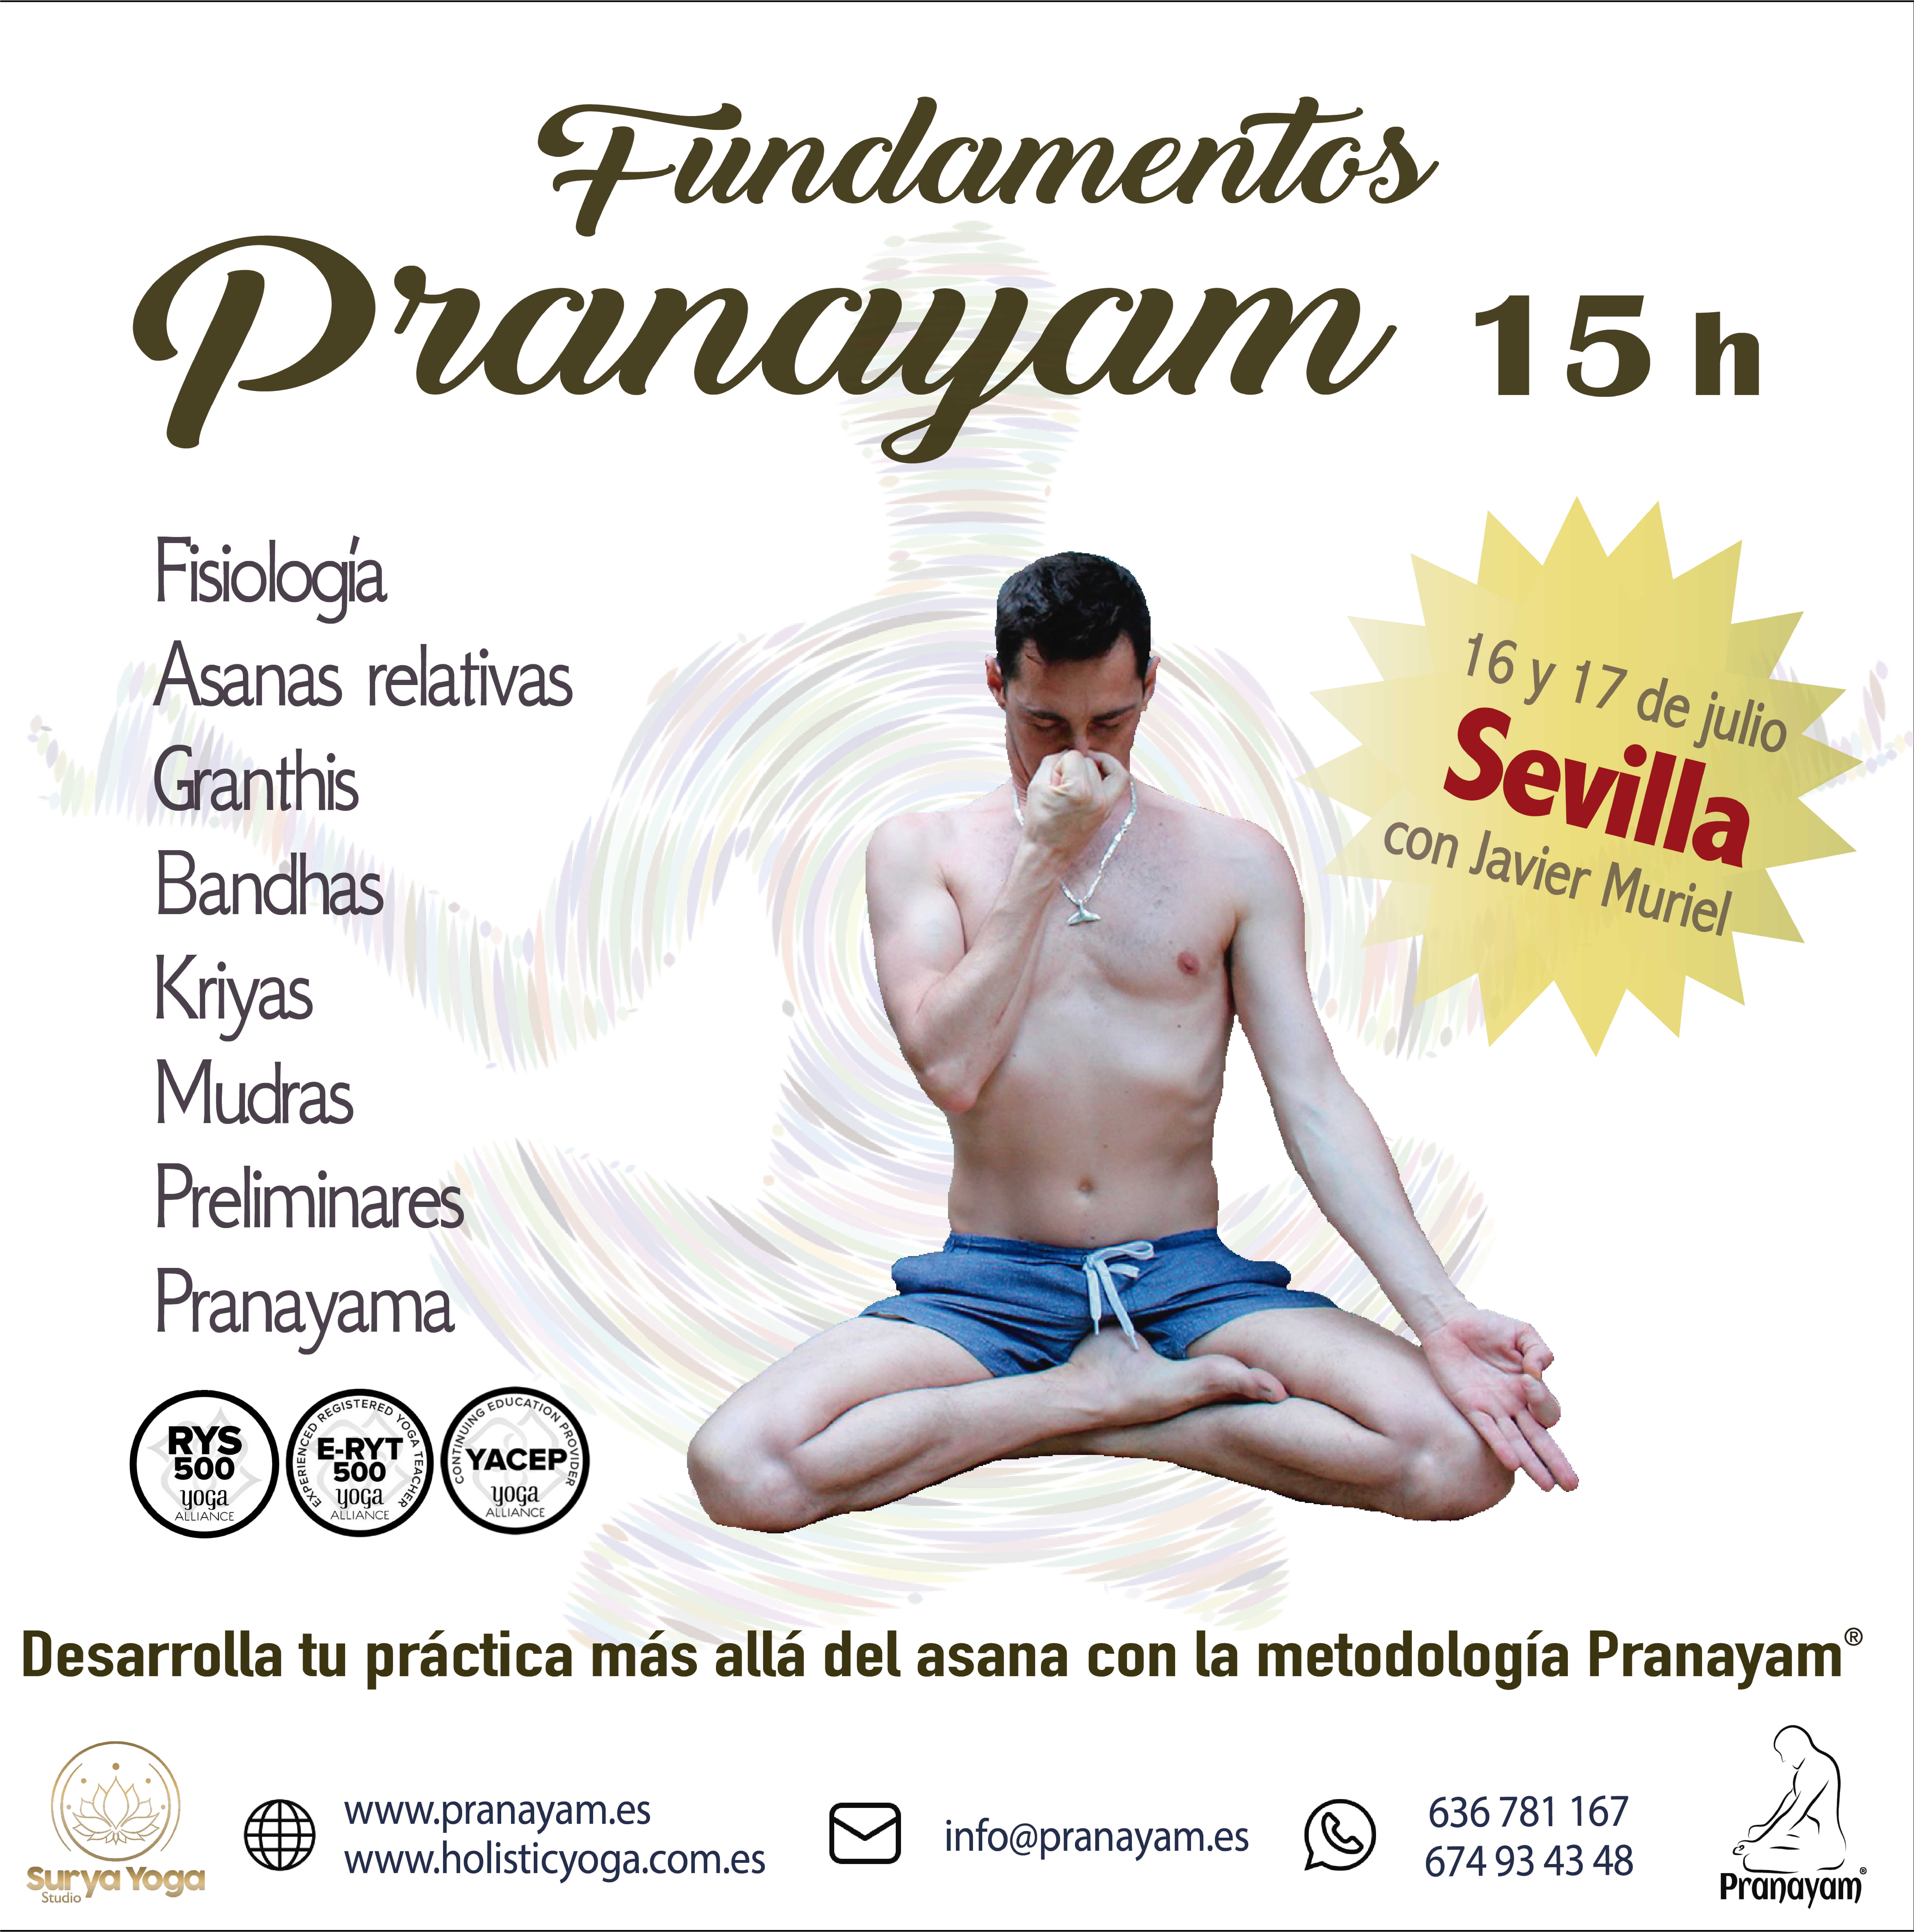 Publicidad Fundamentos Pranayam 15 hrs cuadrado sevilla